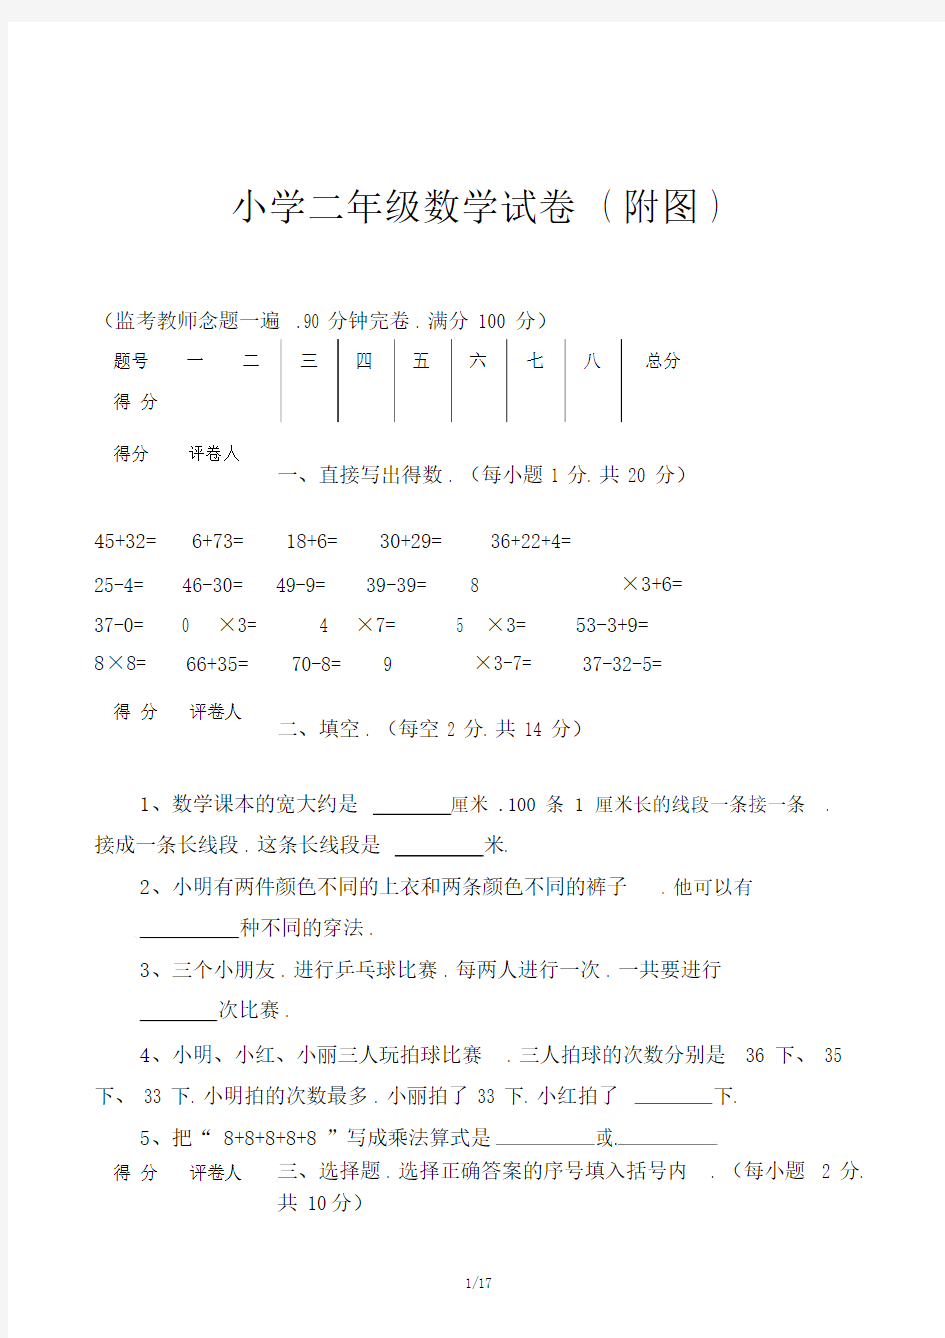 小学二年级数学试卷(附图).doc